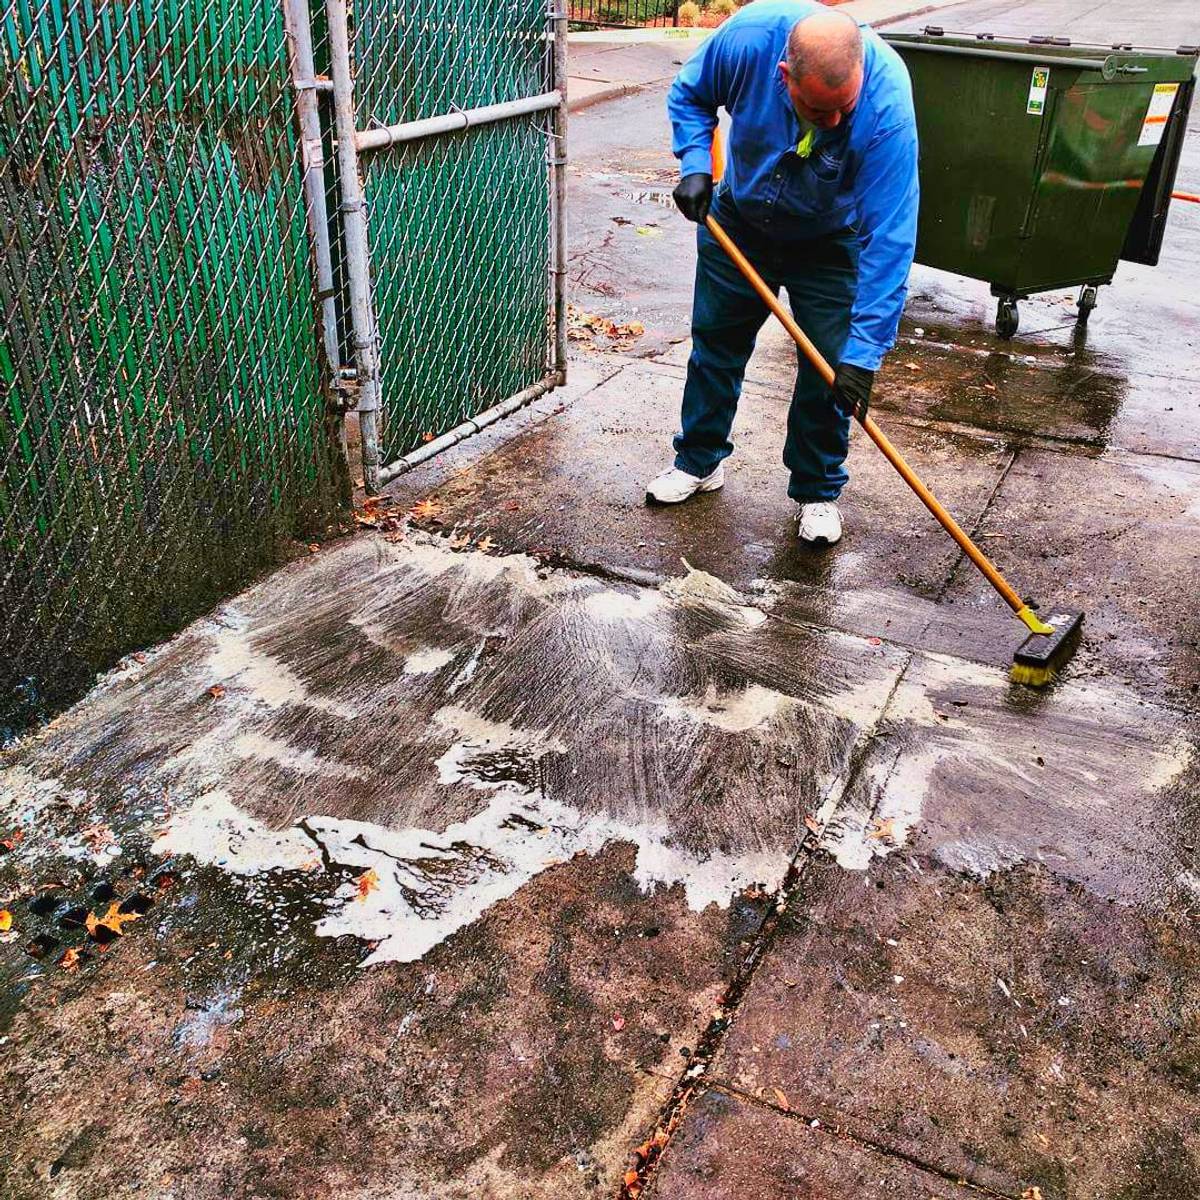 Sidewalk Degreasing & Sanitizing Work in NYC